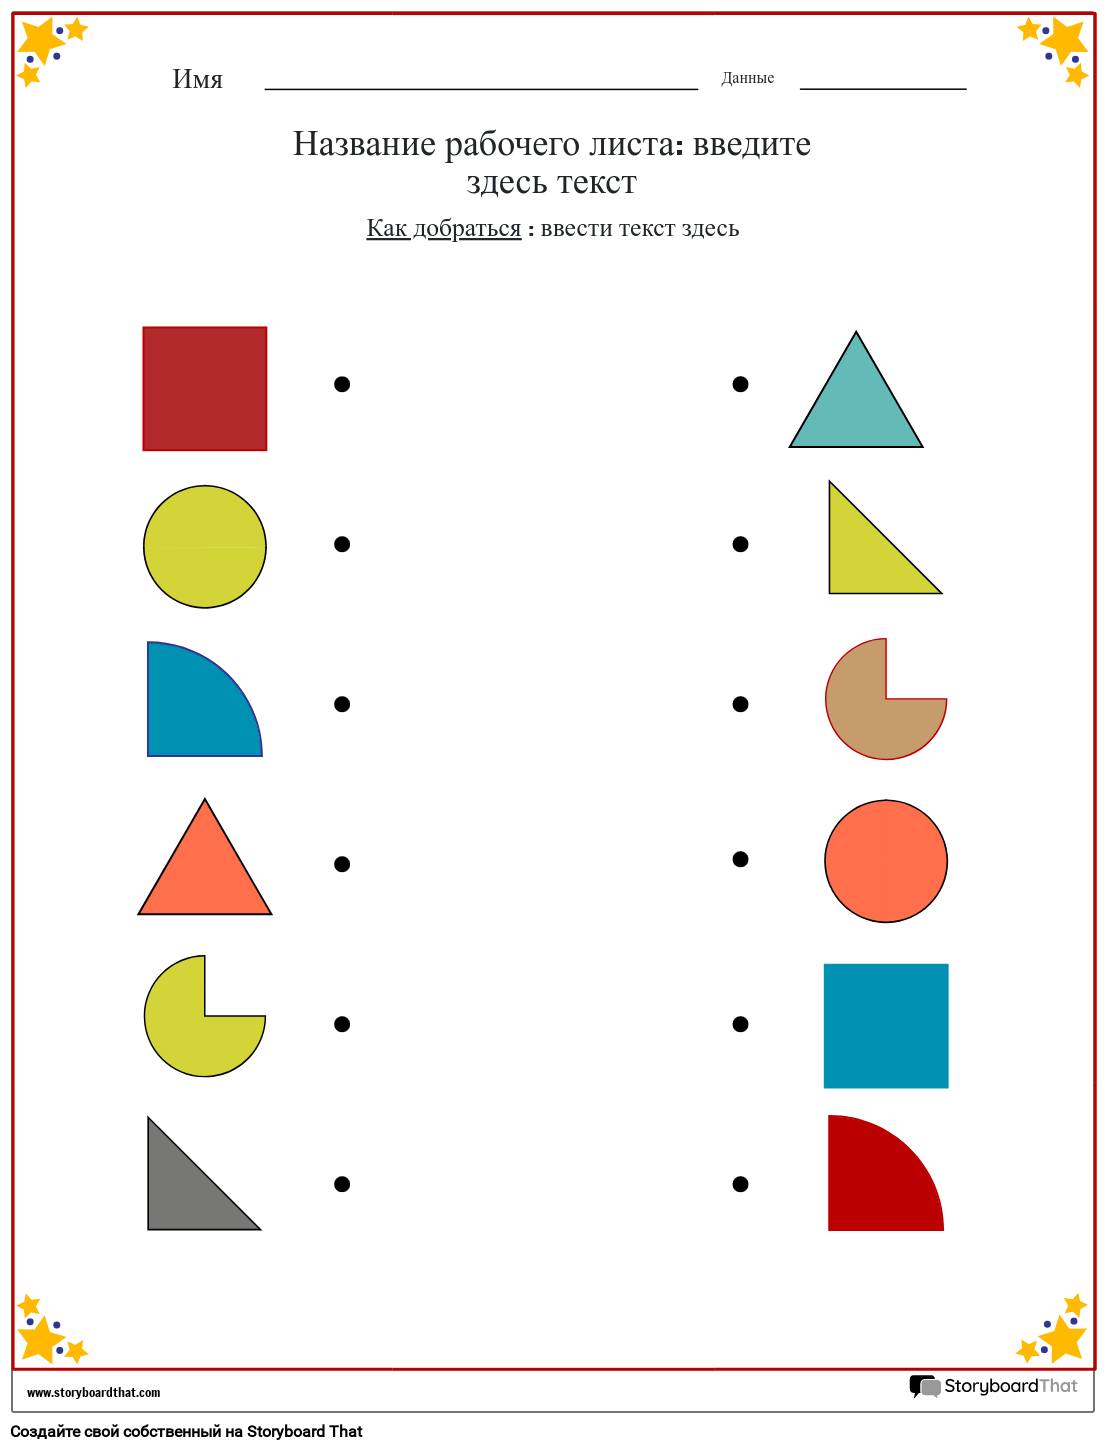 Таблица соответствия цветов фигур